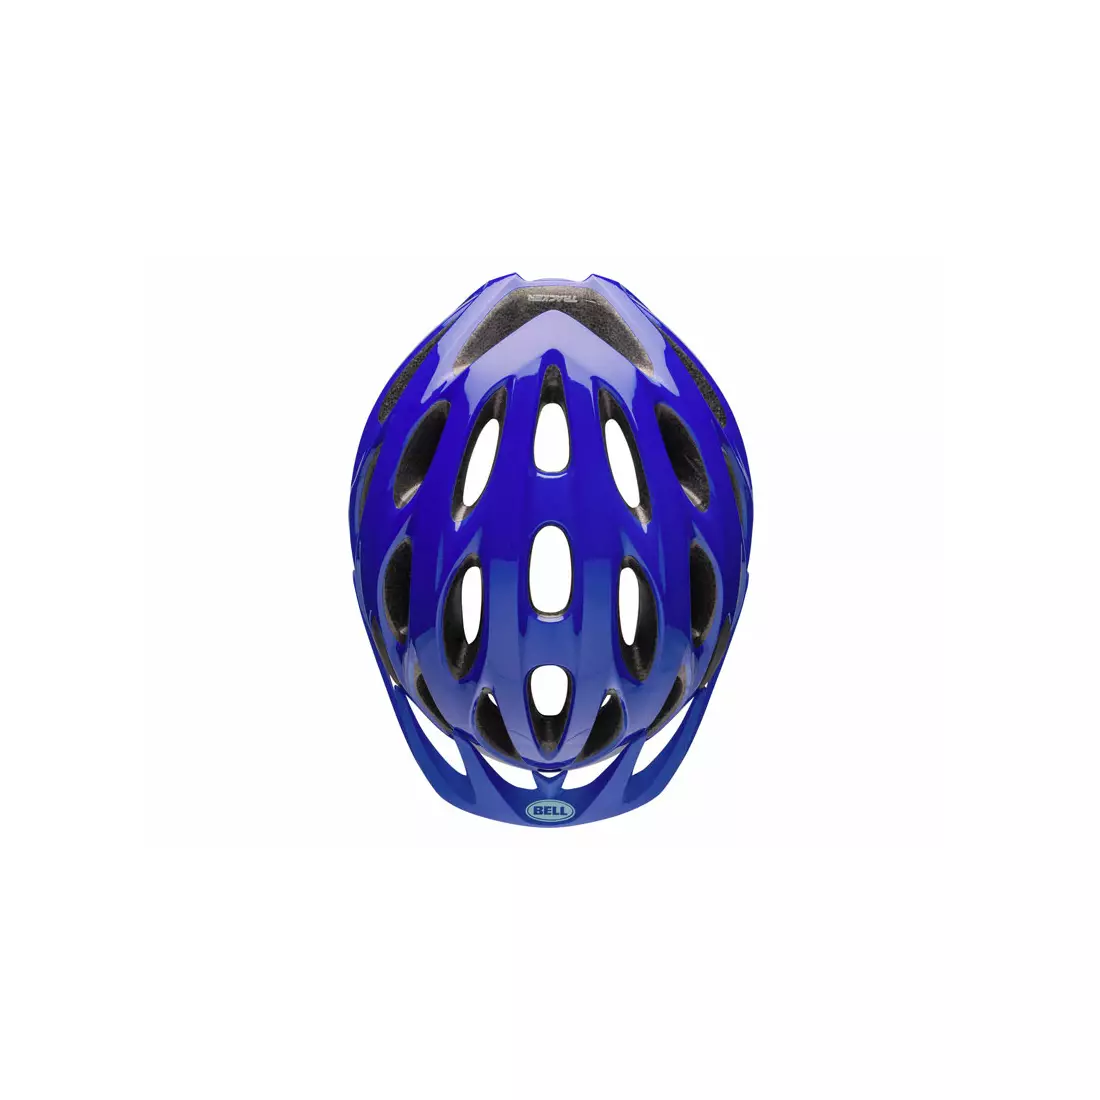 BELL TRACKER - BEL-7087828 - blue bicycle helmet